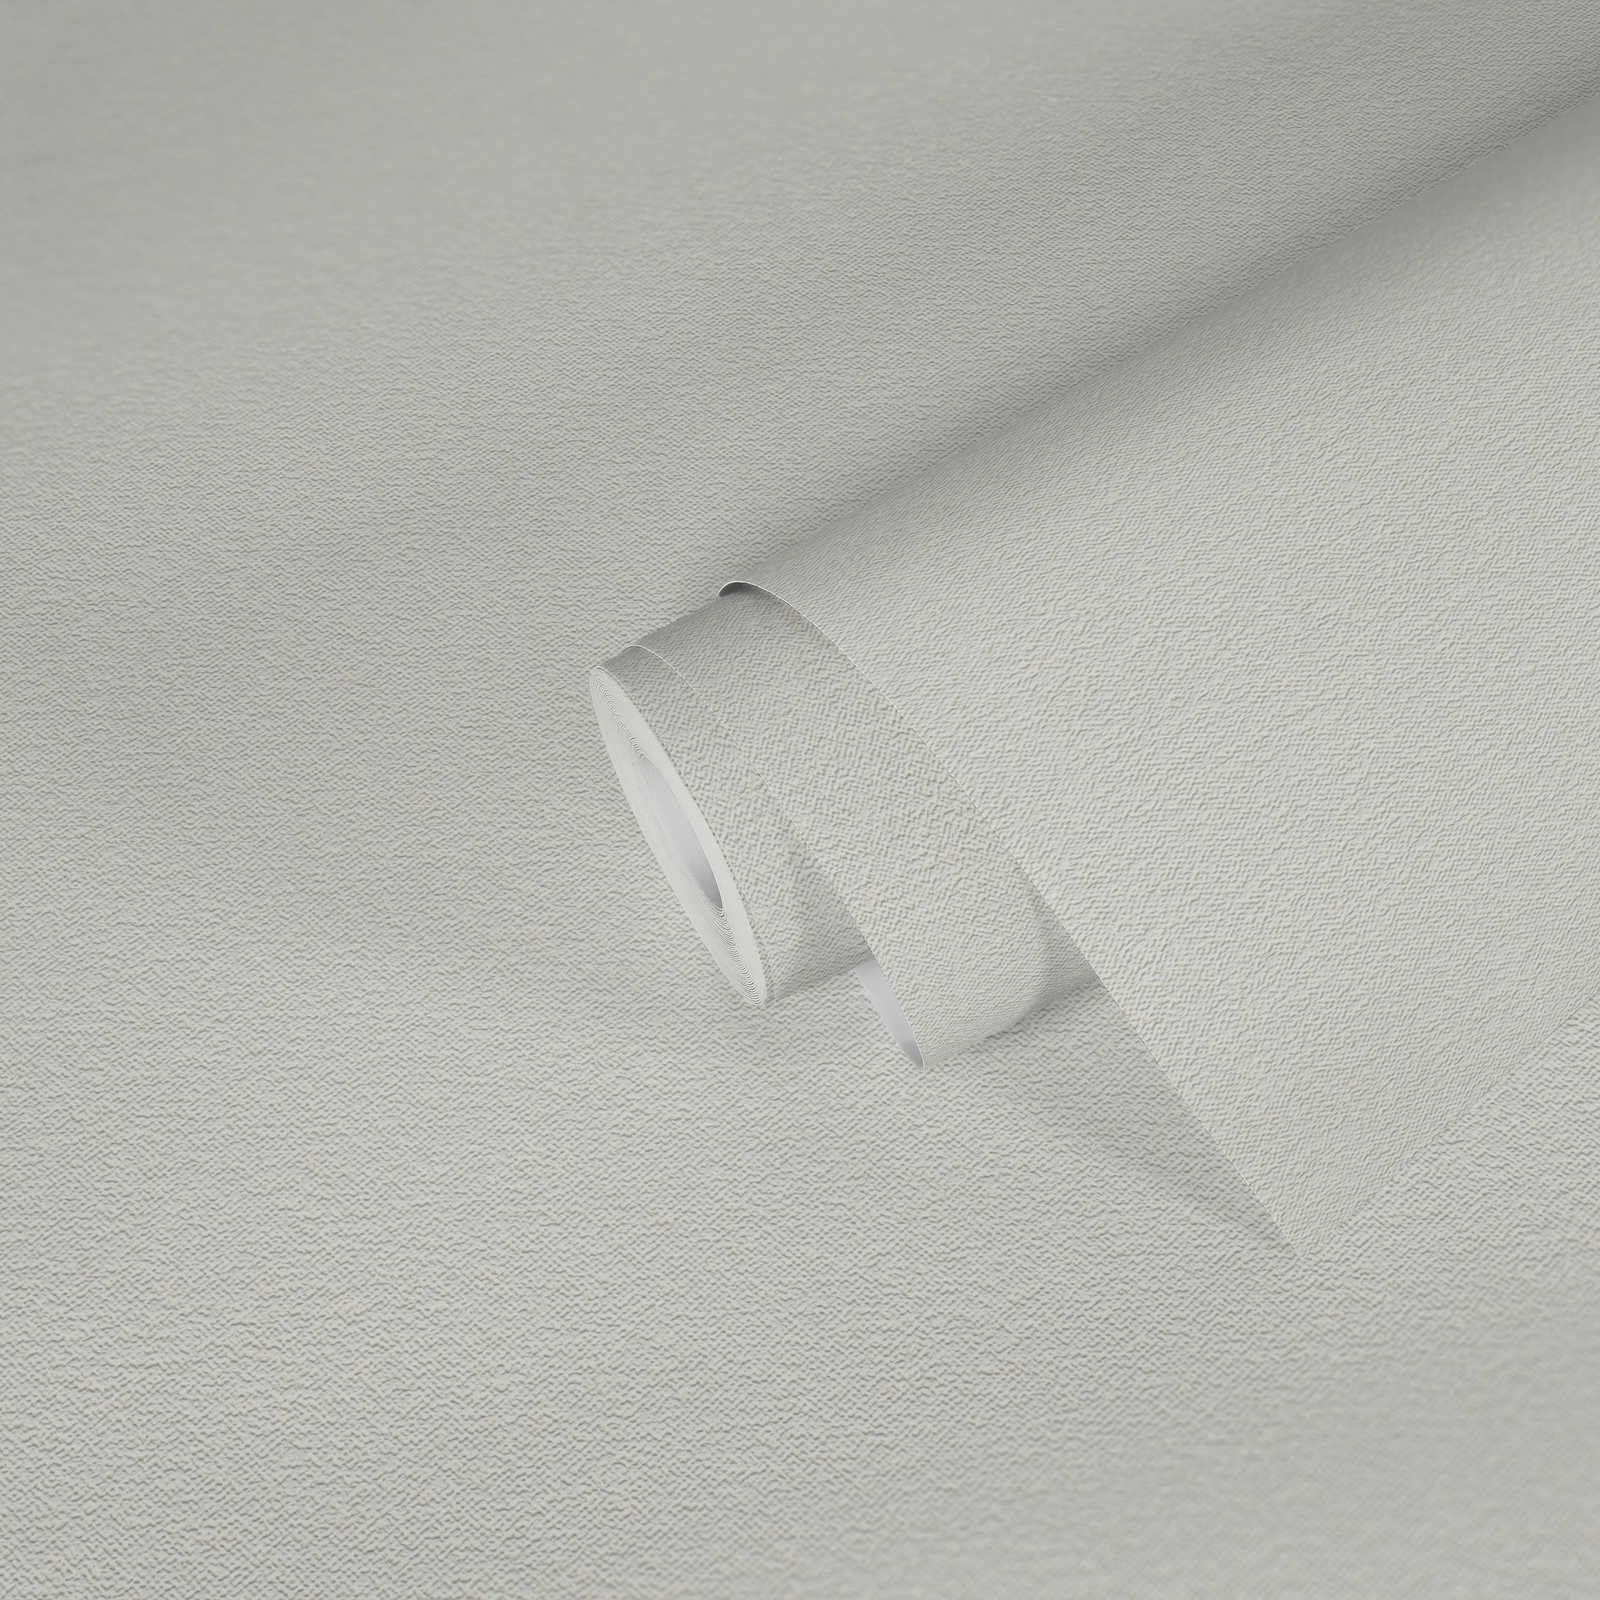             Verfbaar behangpapier met schuimstructuur - wit
        